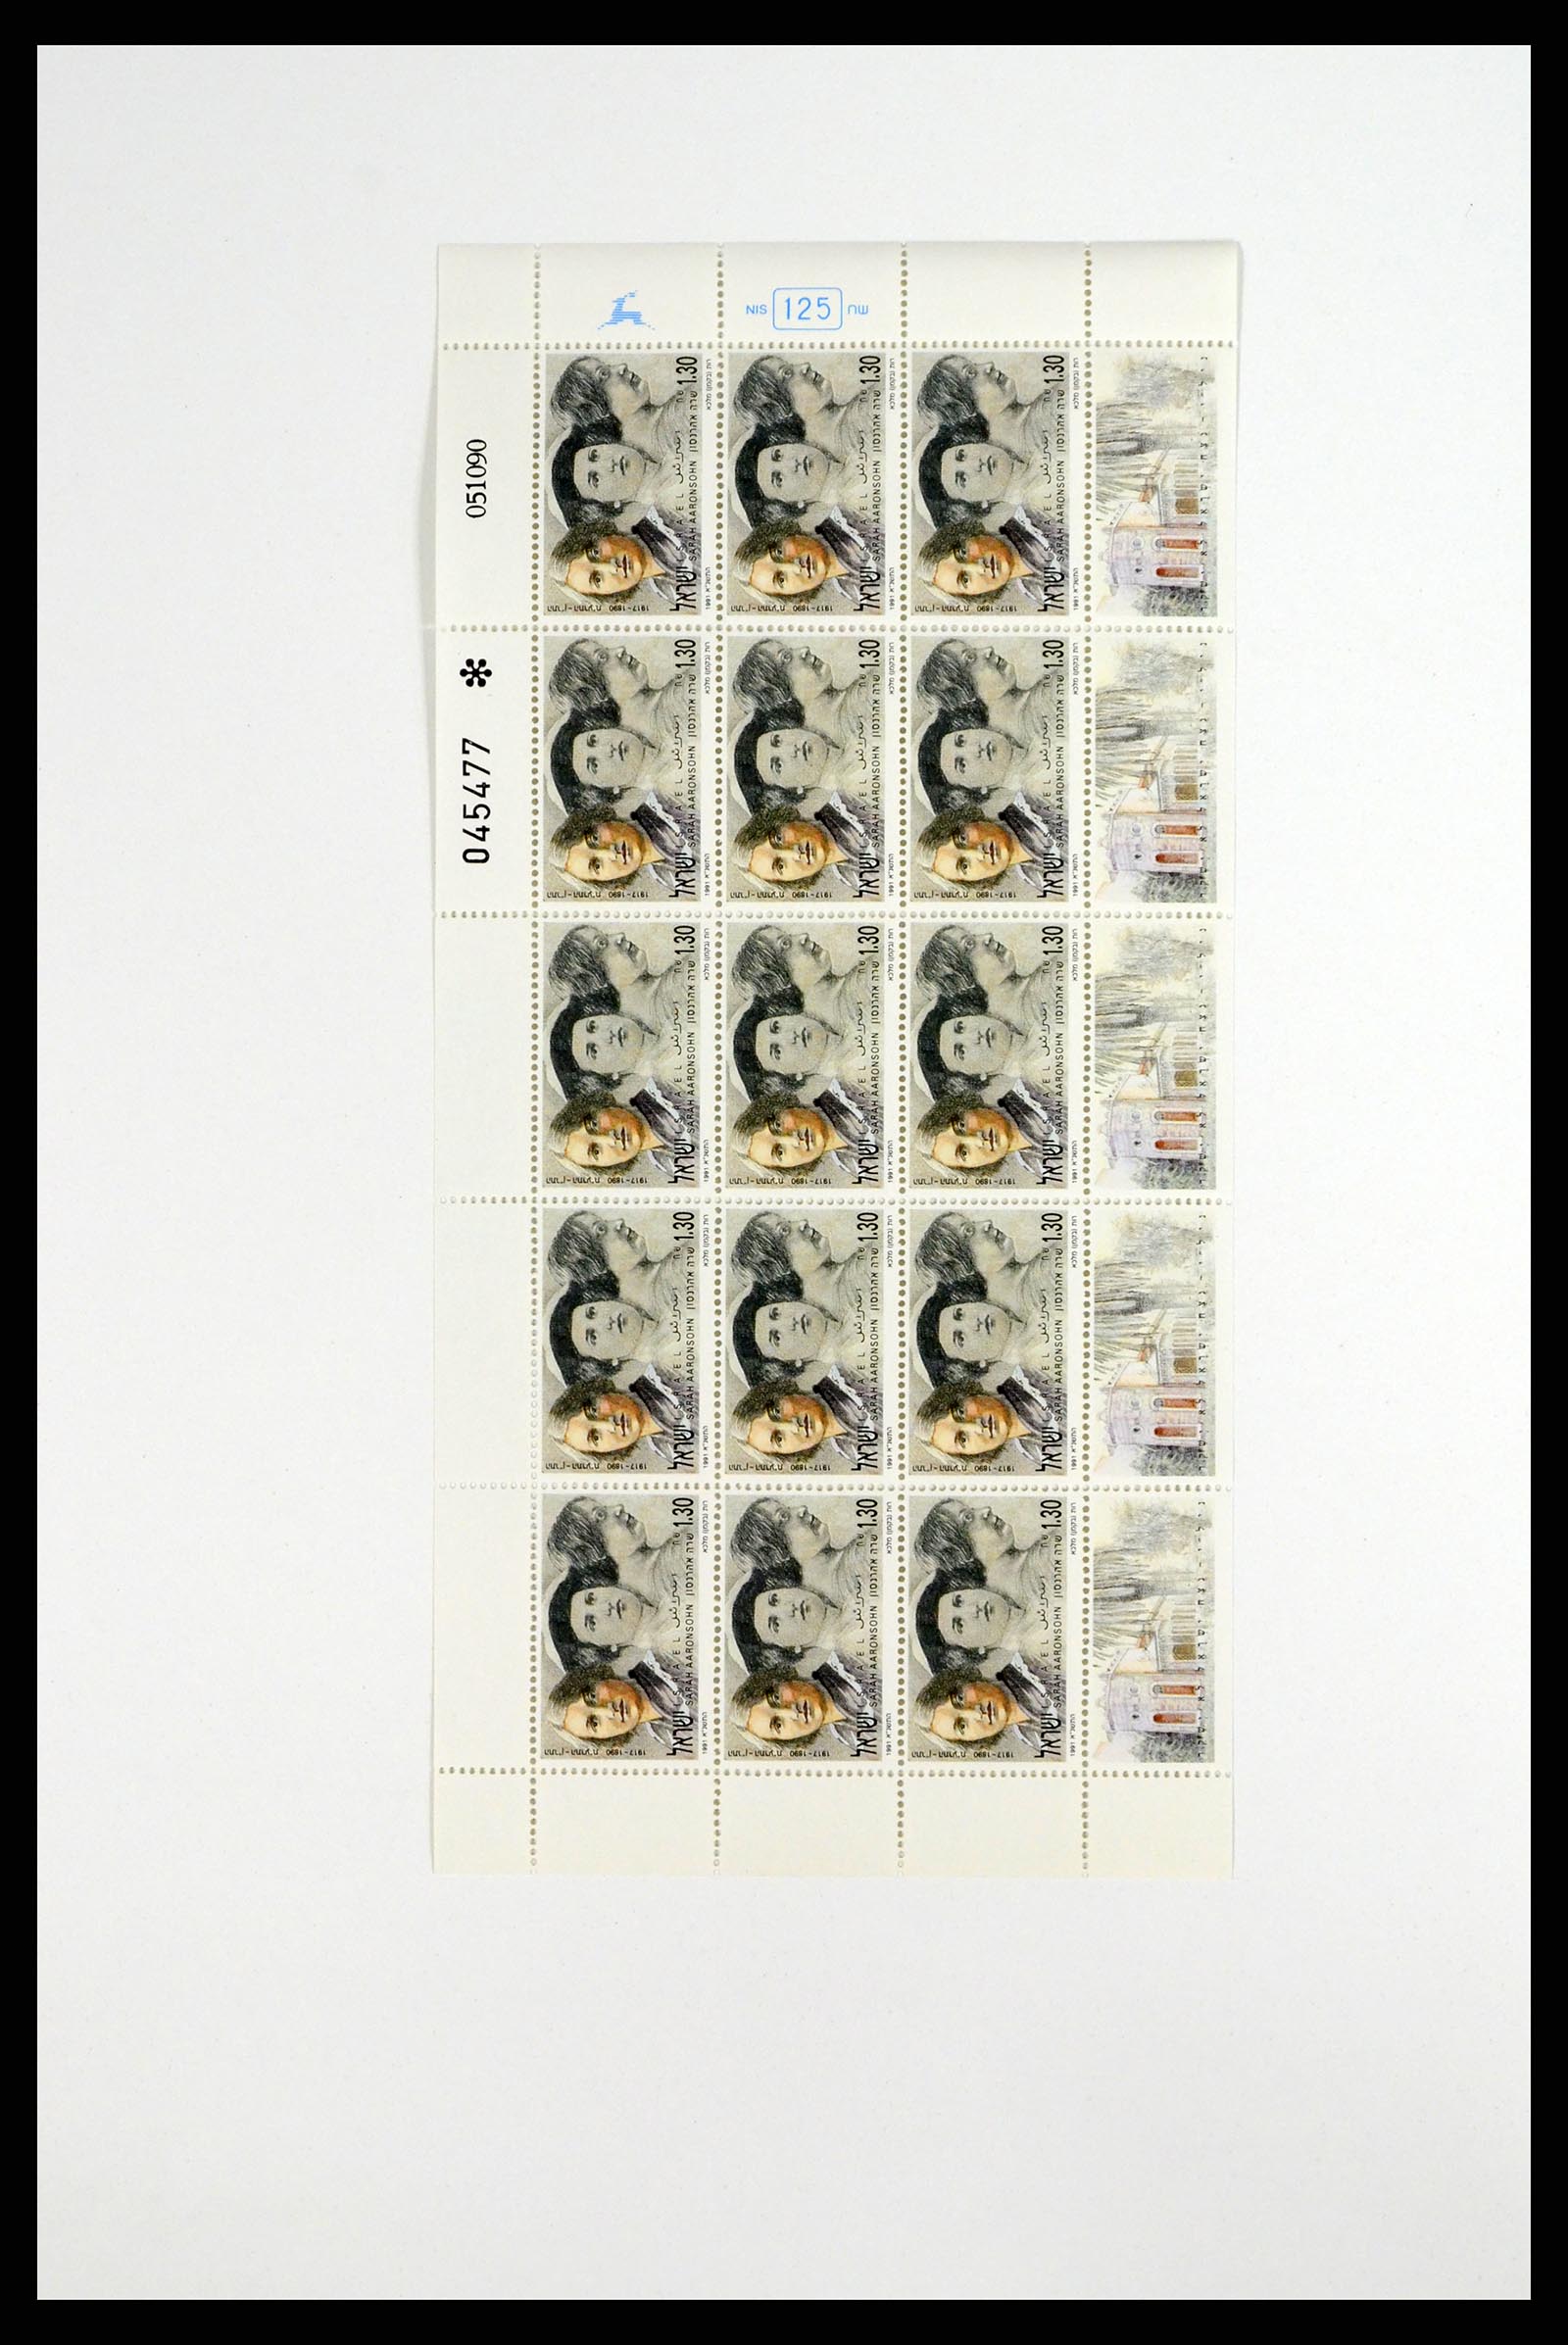 37779 104 - Postzegelverzameling 37779 Israël velletjes 1986-2009.